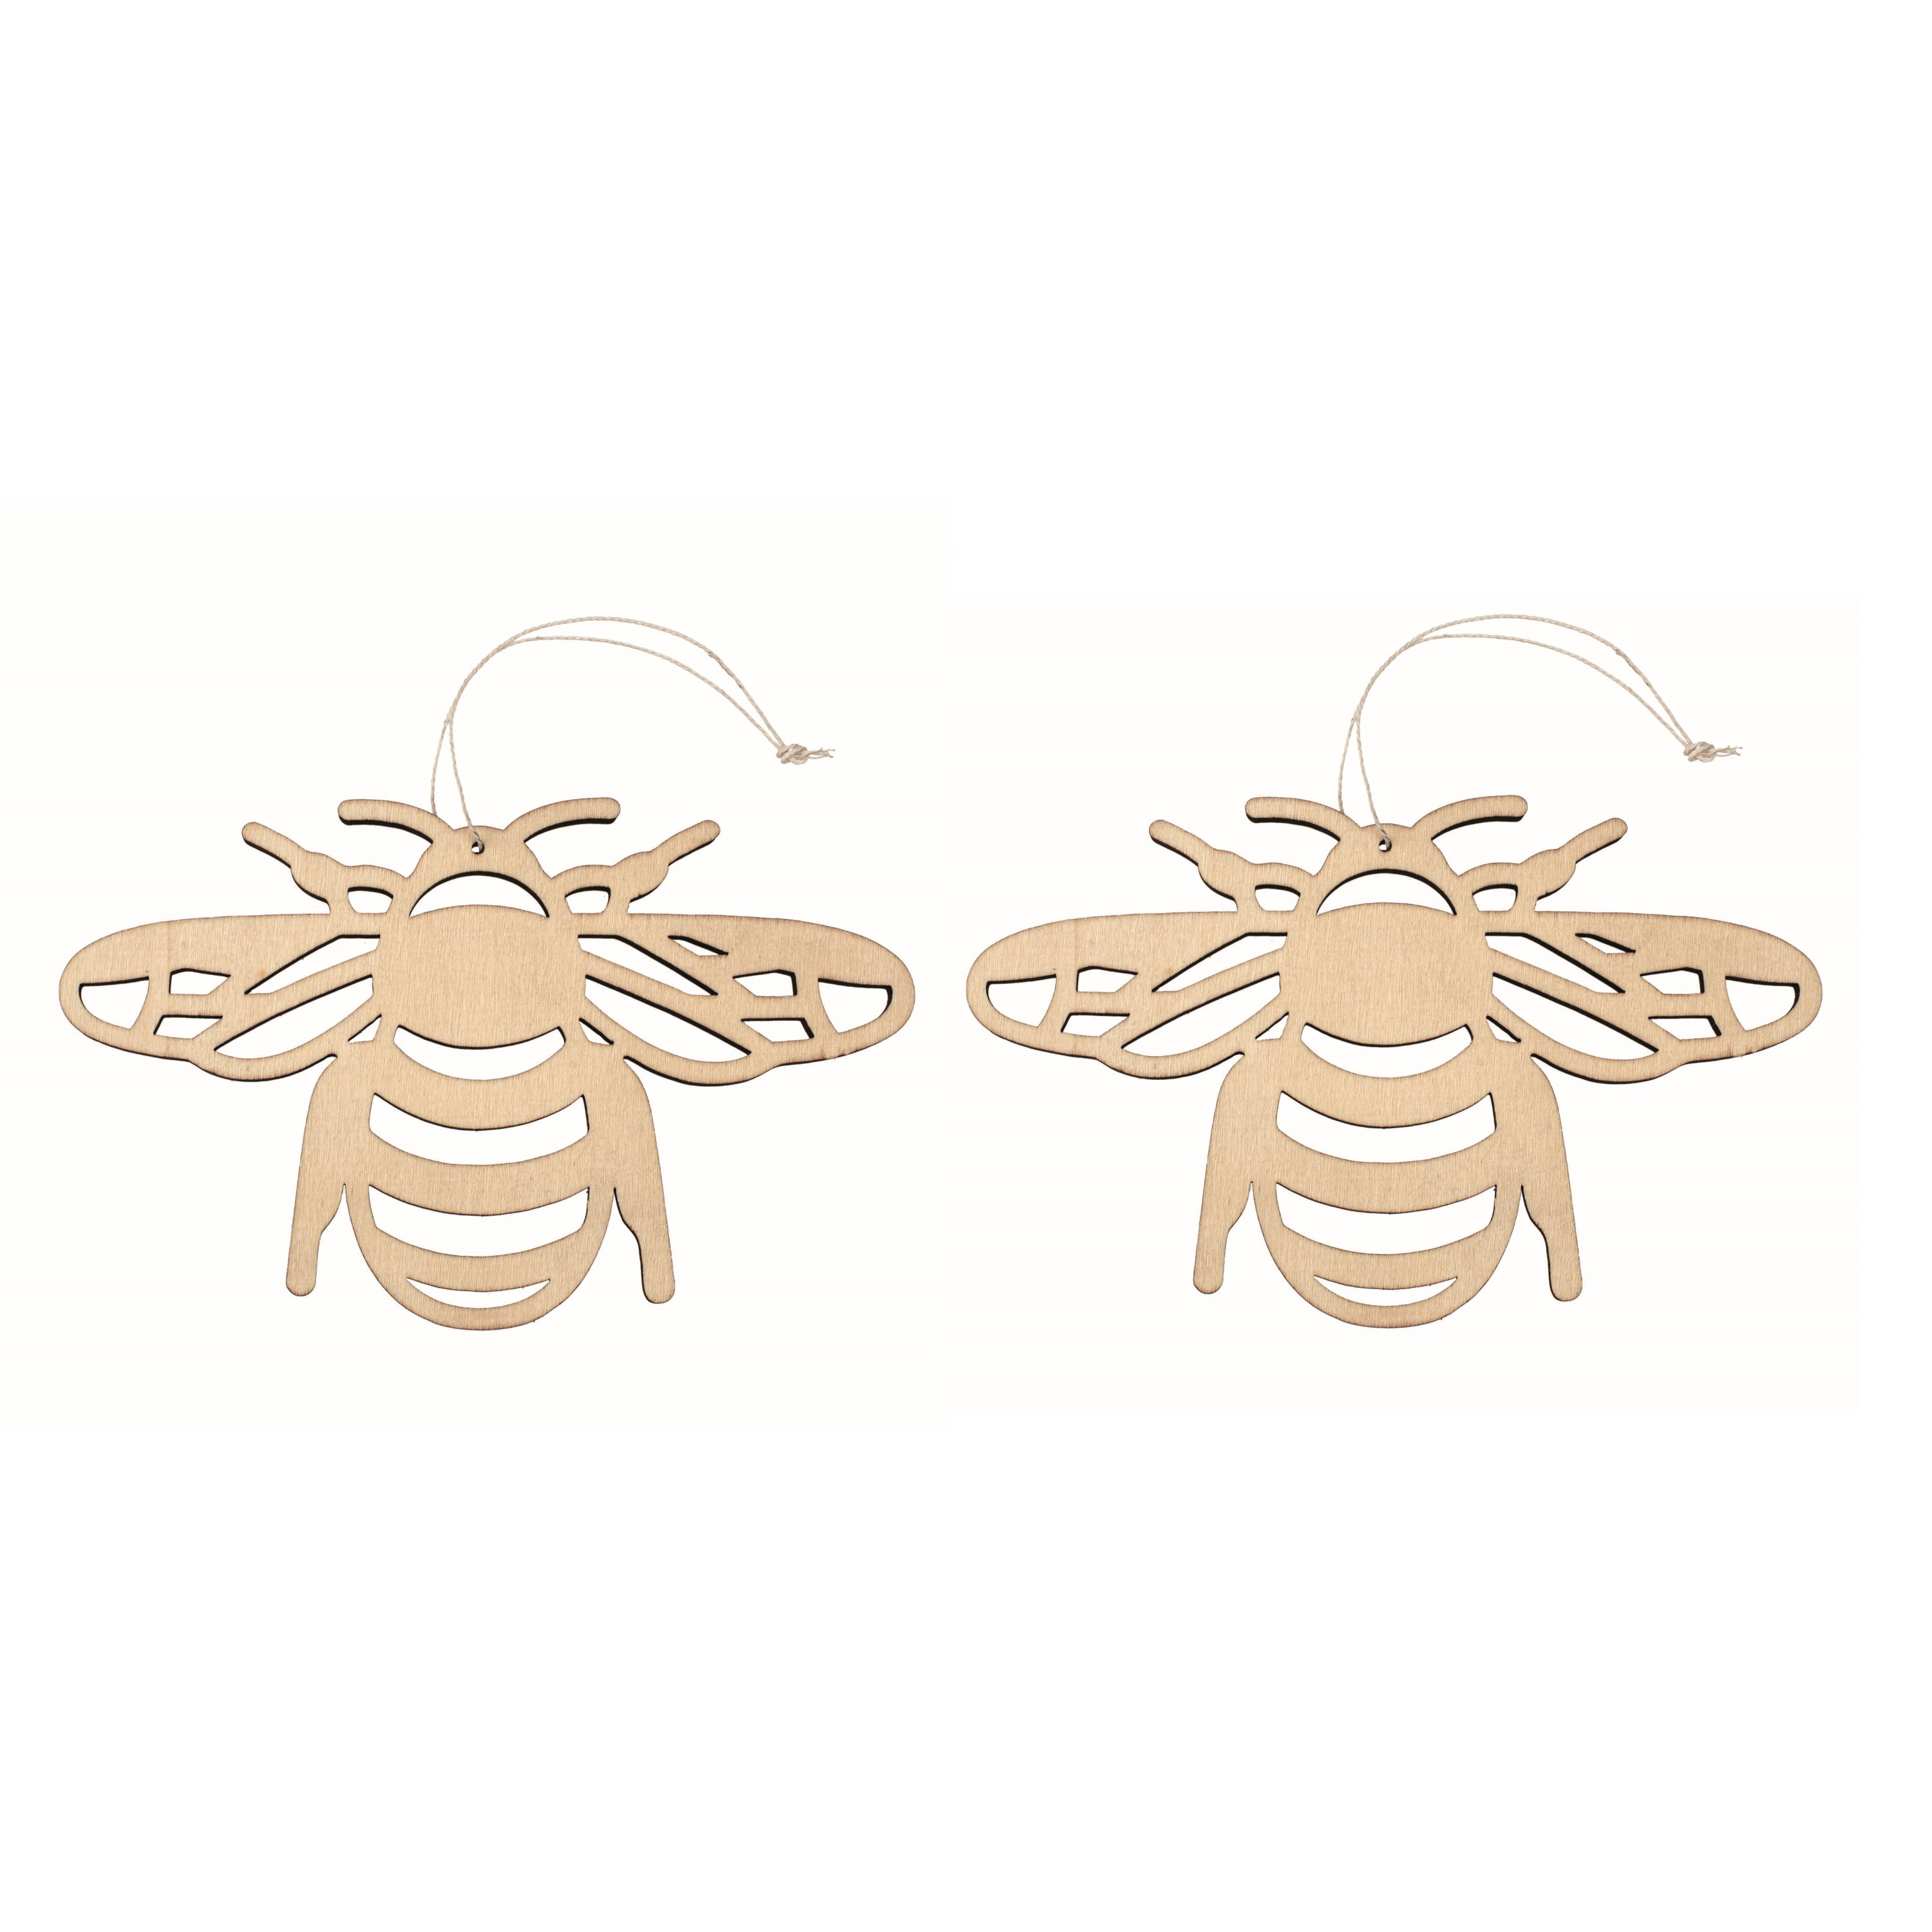 Set van 3x stuks houten dieren decoratie hangers van een honingbij van 12 x 19 cm